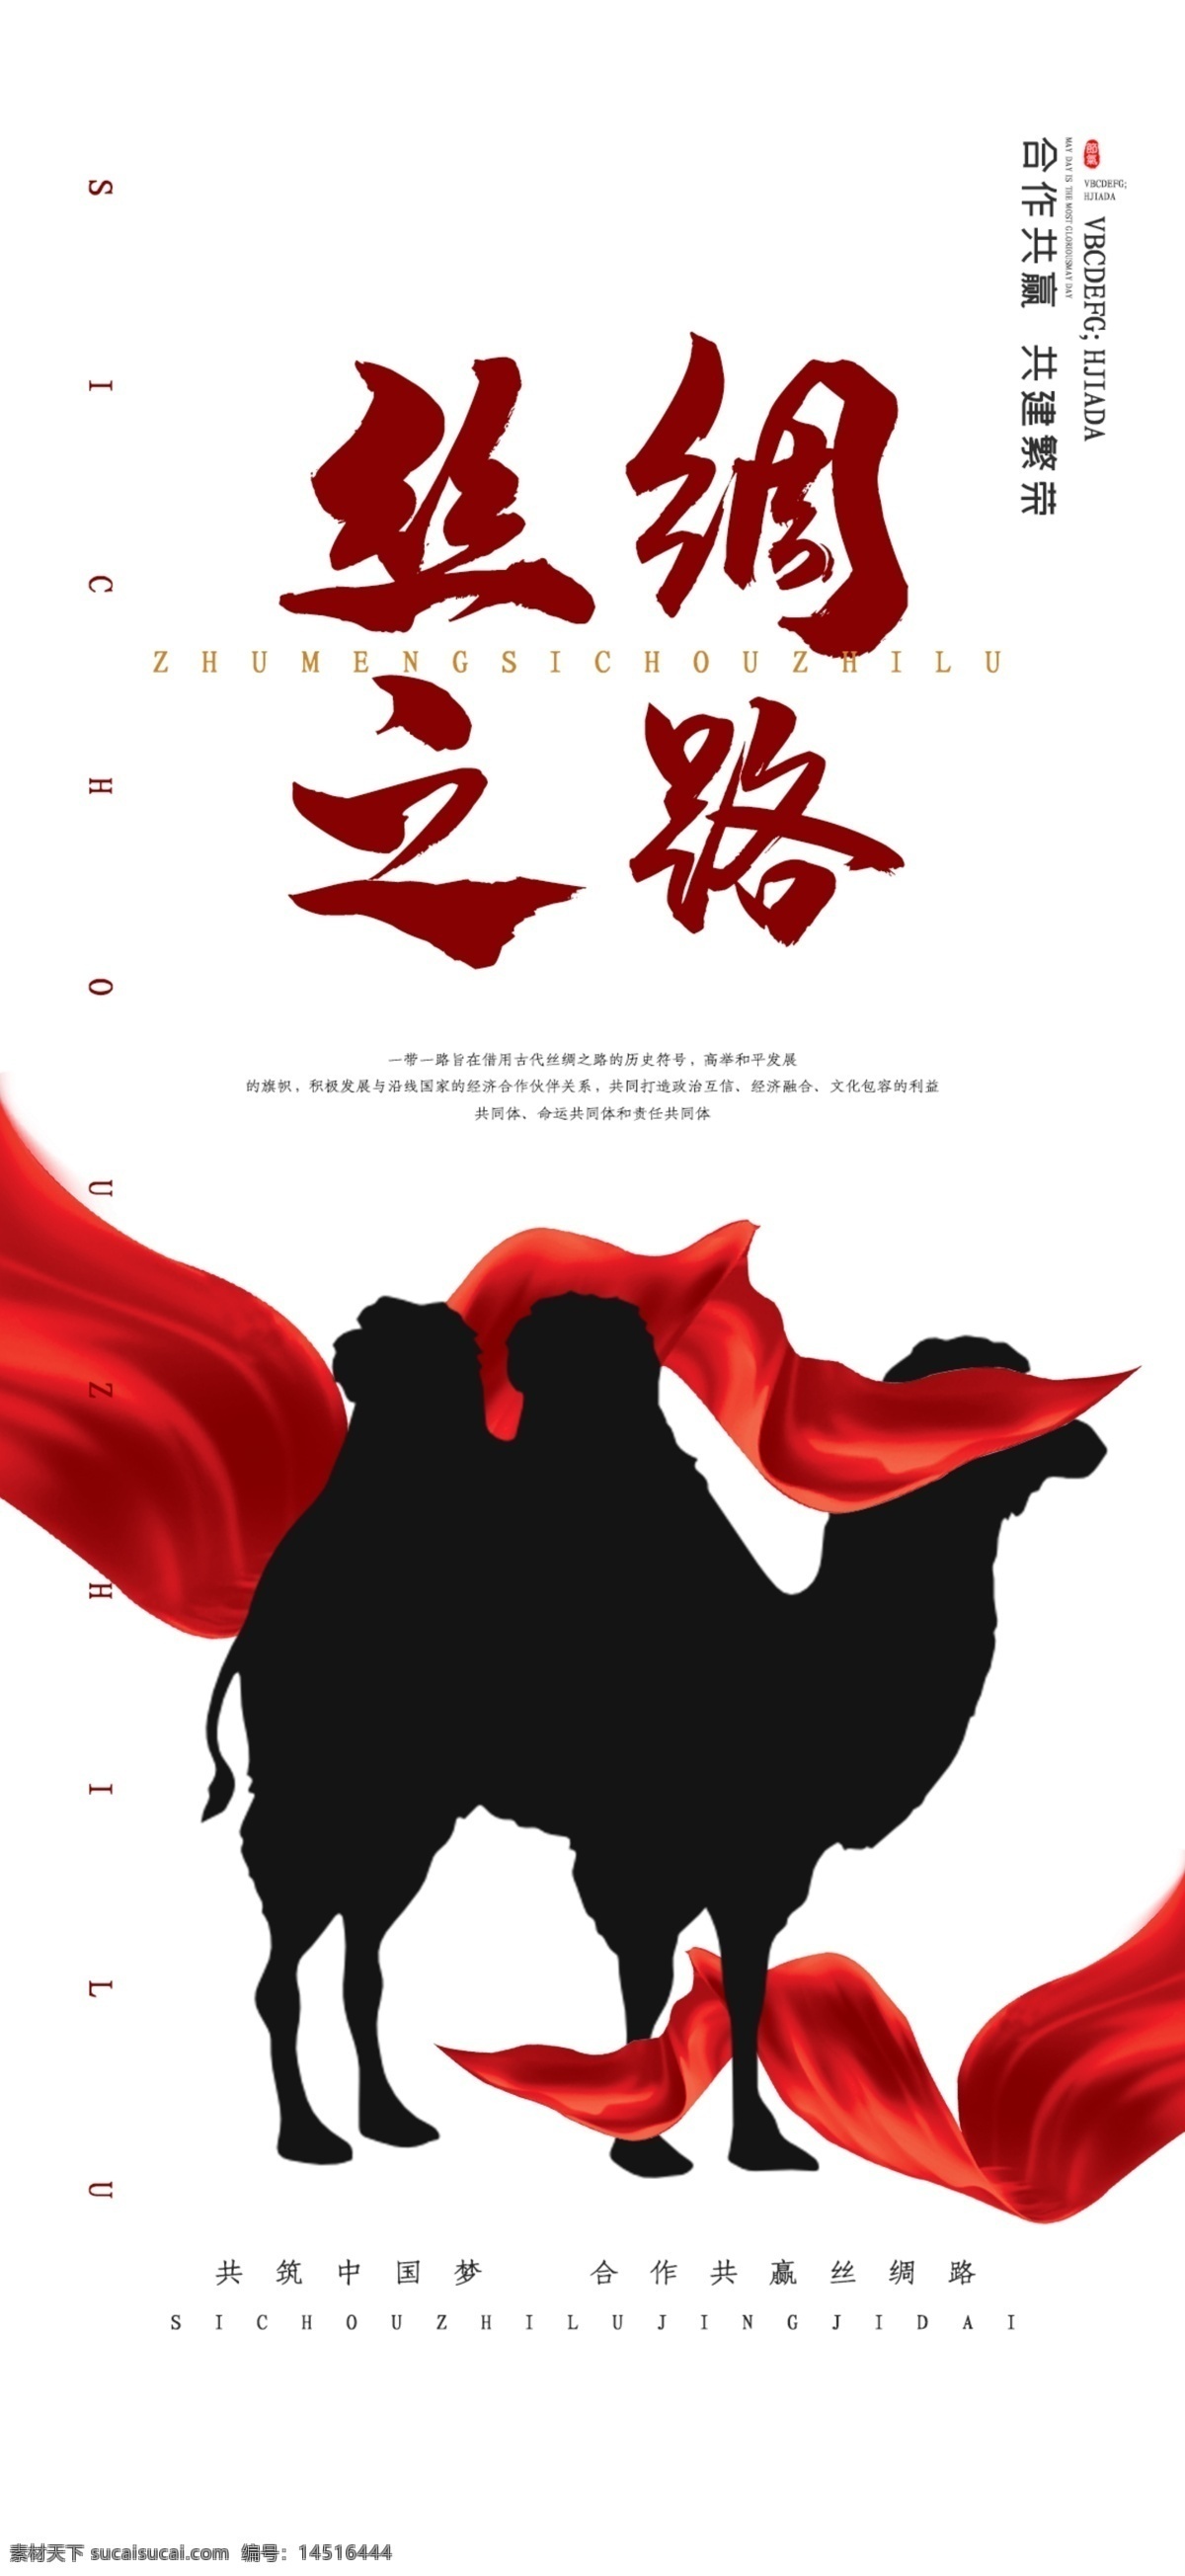 创意 中 国风 丝绸之路 手机 海报 3g智能手机 3g 智能手机 丝绸 爆炸符号 移动标志 海报类 广告设计模板